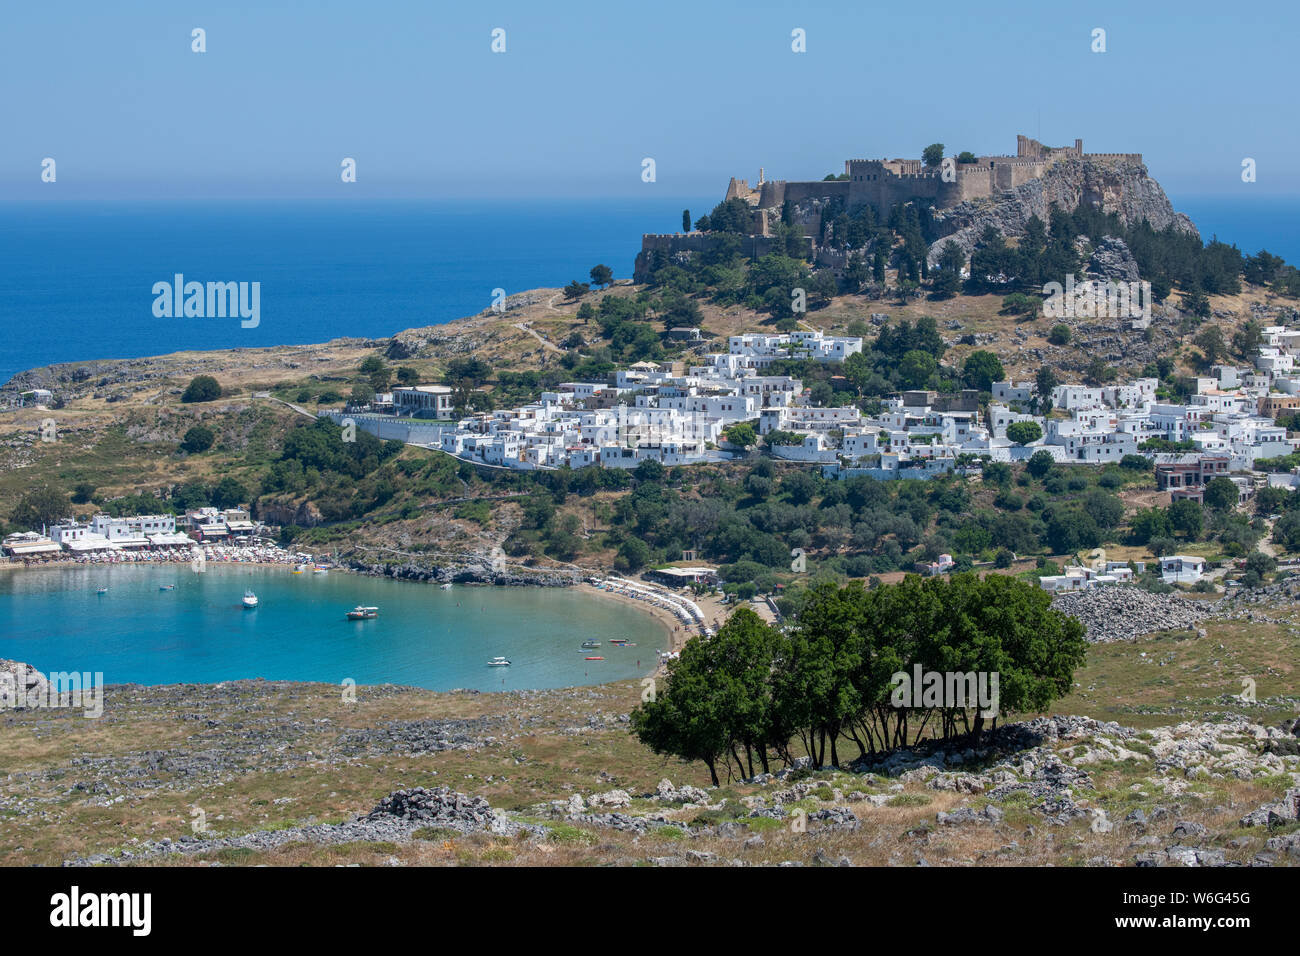 La Grèce, Rhodes, la plus grande des îles du Dodécanèse. Lindos historique, vue panoramique de l'Acropole de Lindos et les ruines de Temple d'Athéna Lindia. Banque D'Images